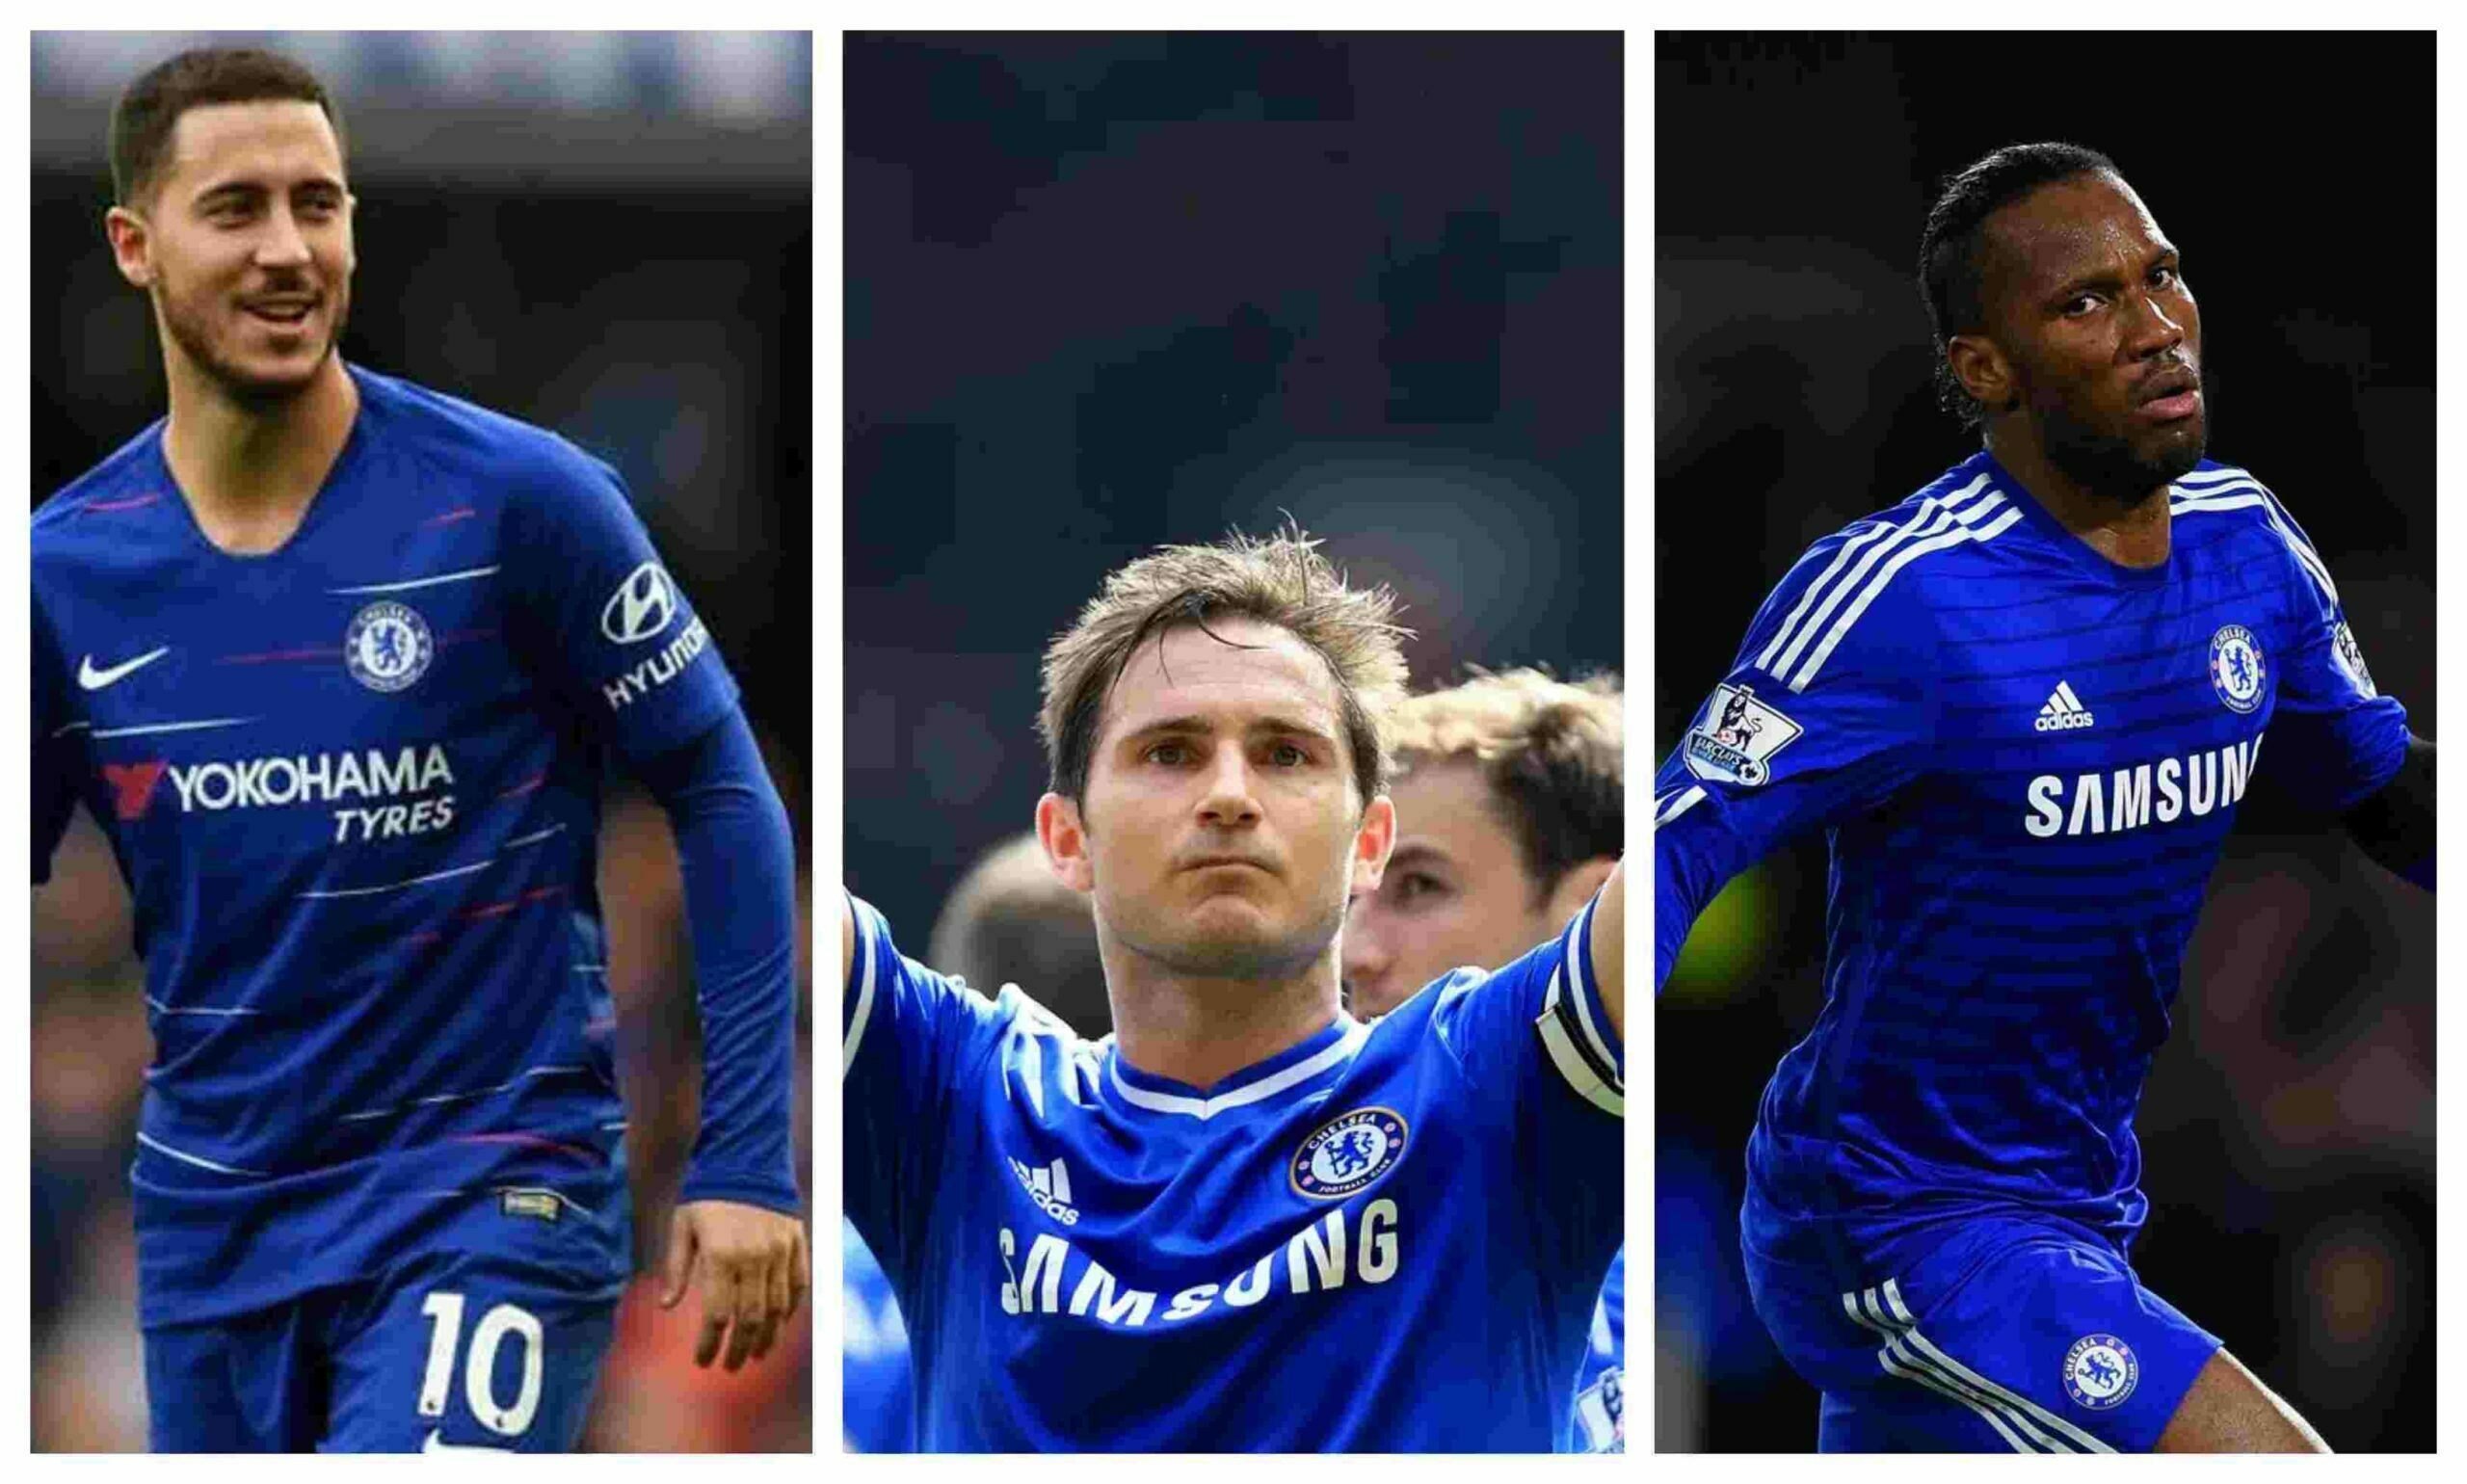 Eden Hazard, Frank Lampard, and Didier Drogba